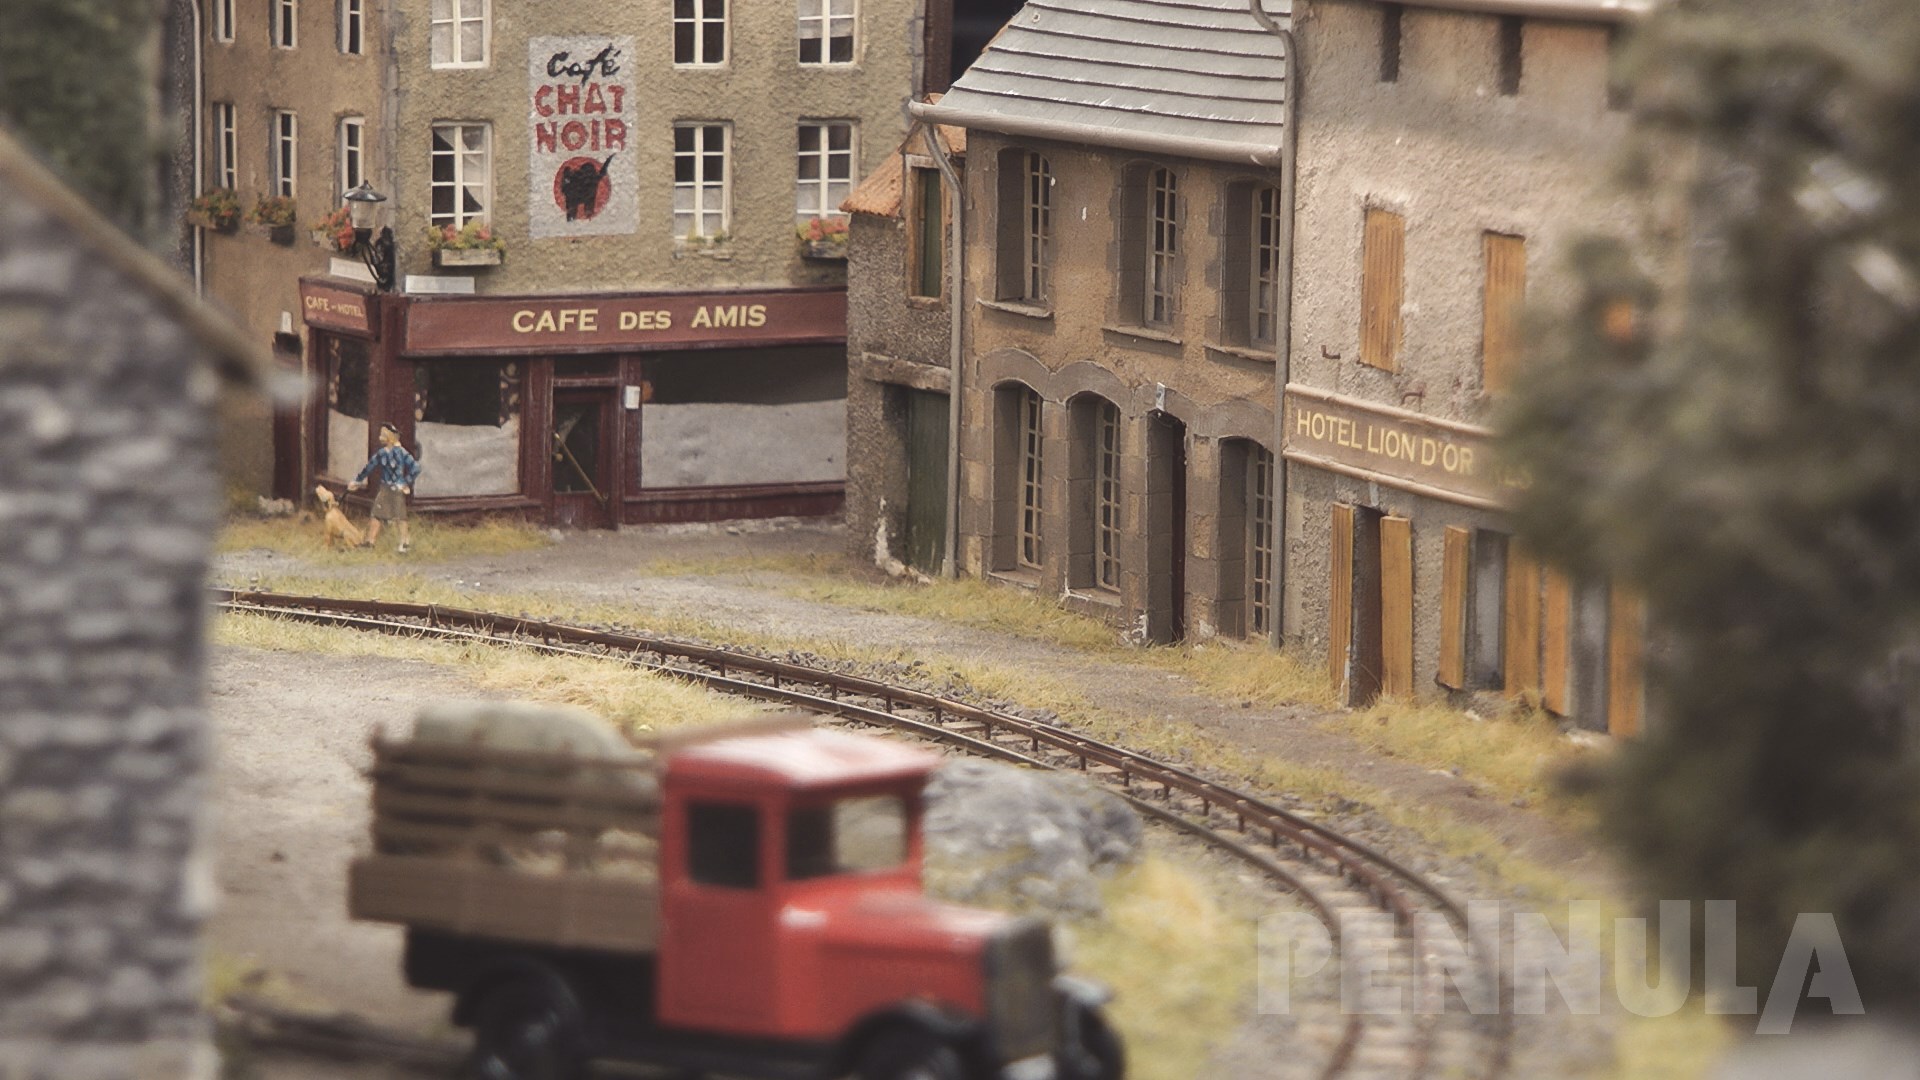 Modelleisenbahn - Ein Miniaturland mit Schmalspur Eisenbahn und Dampflok, wo jeder leben möchte